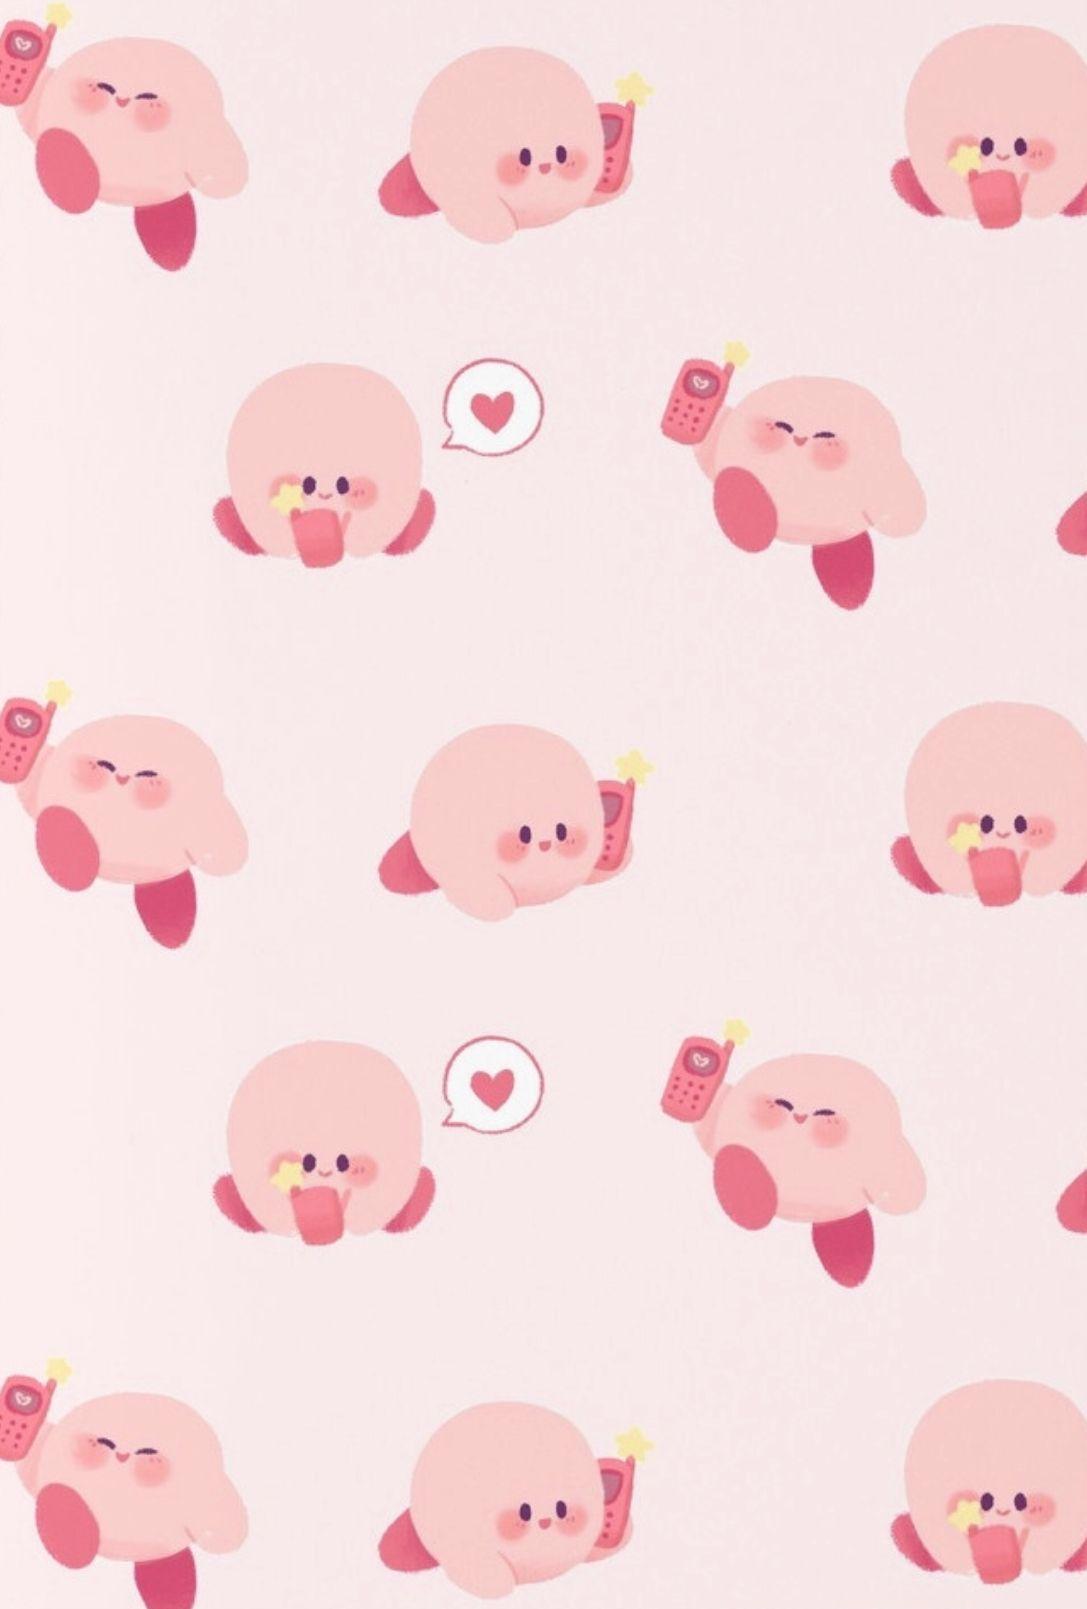 1087x1609 Mẫu Kirby.  Kirby.  Trò chơi Kirby, Kirby memes, Kawaii